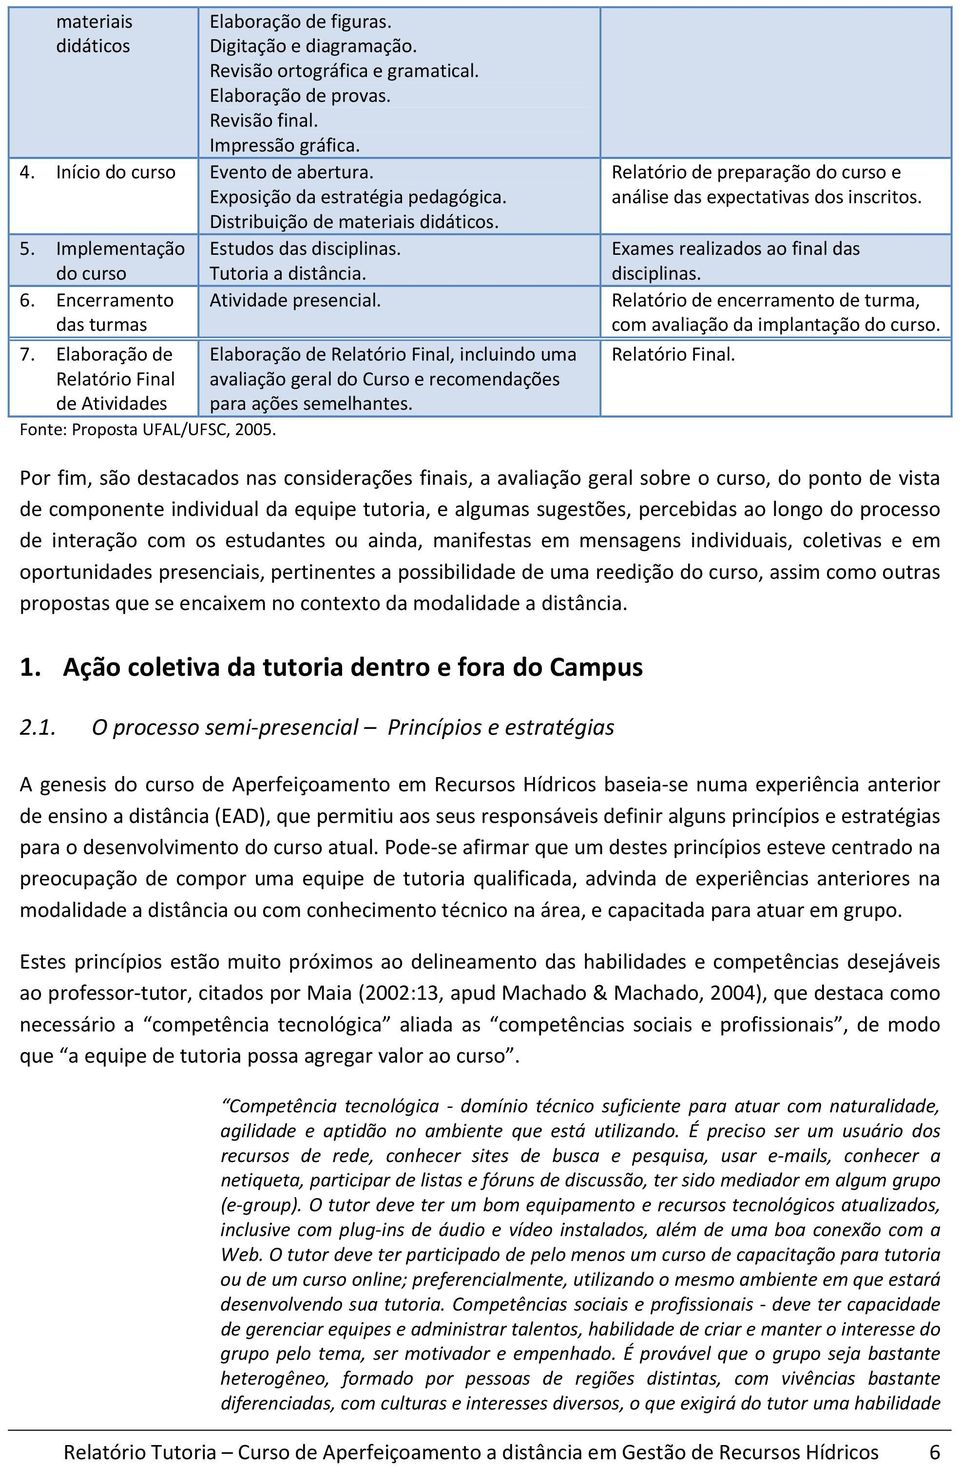 Elaboração de Relatório Final de Atividades Fonte: Proposta UFAL/UFSC, 2005. Elaboração de Relatório Final, incluindo uma avaliação geral do Curso e recomendações para ações semelhantes.